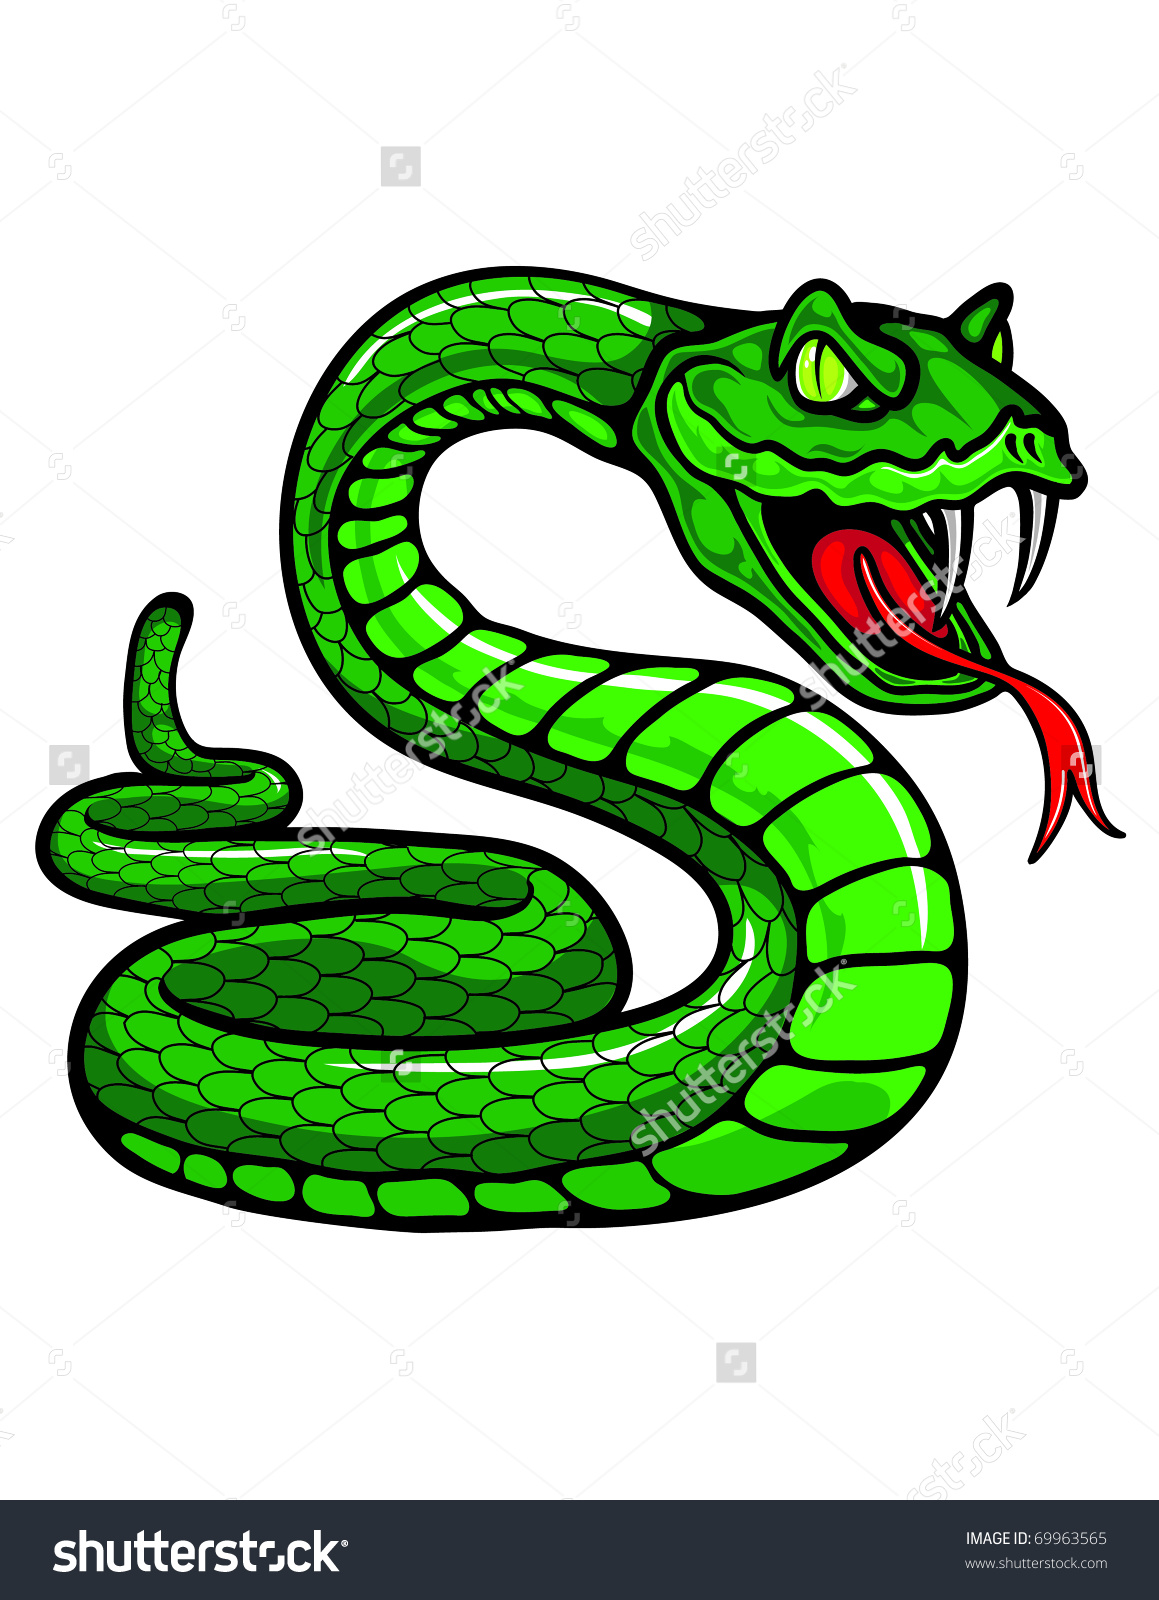 snake clipart venomous snake